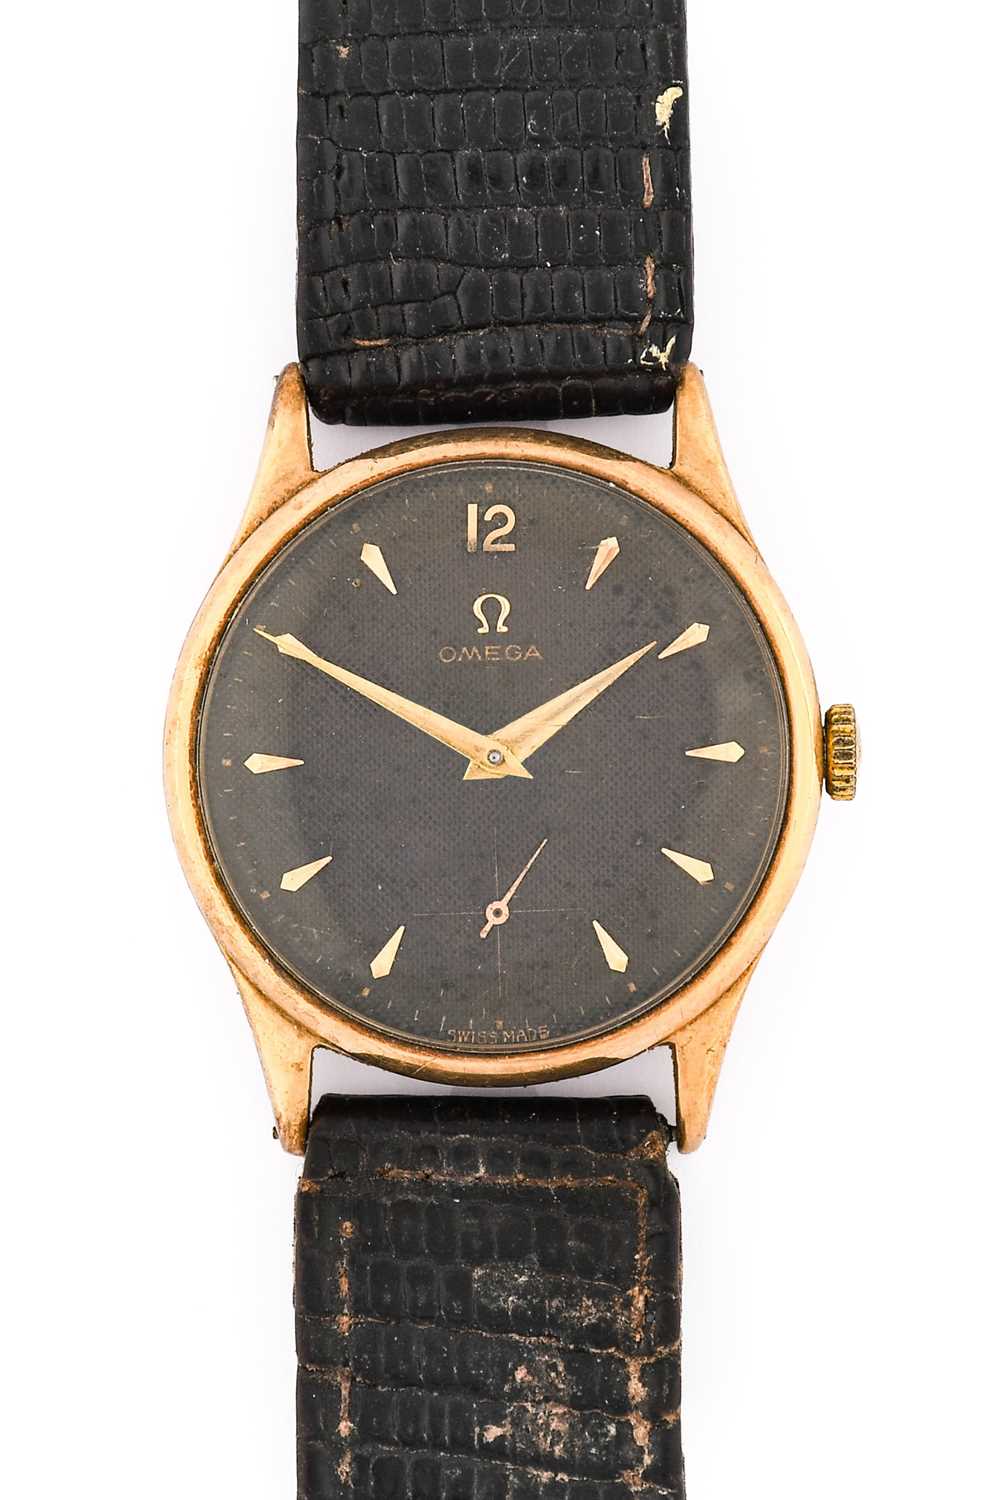 Omega: A 9 Carat Gold Hobnail Finished Black Dial Wristwatch, signed Omega, 1954, (calibre 266)